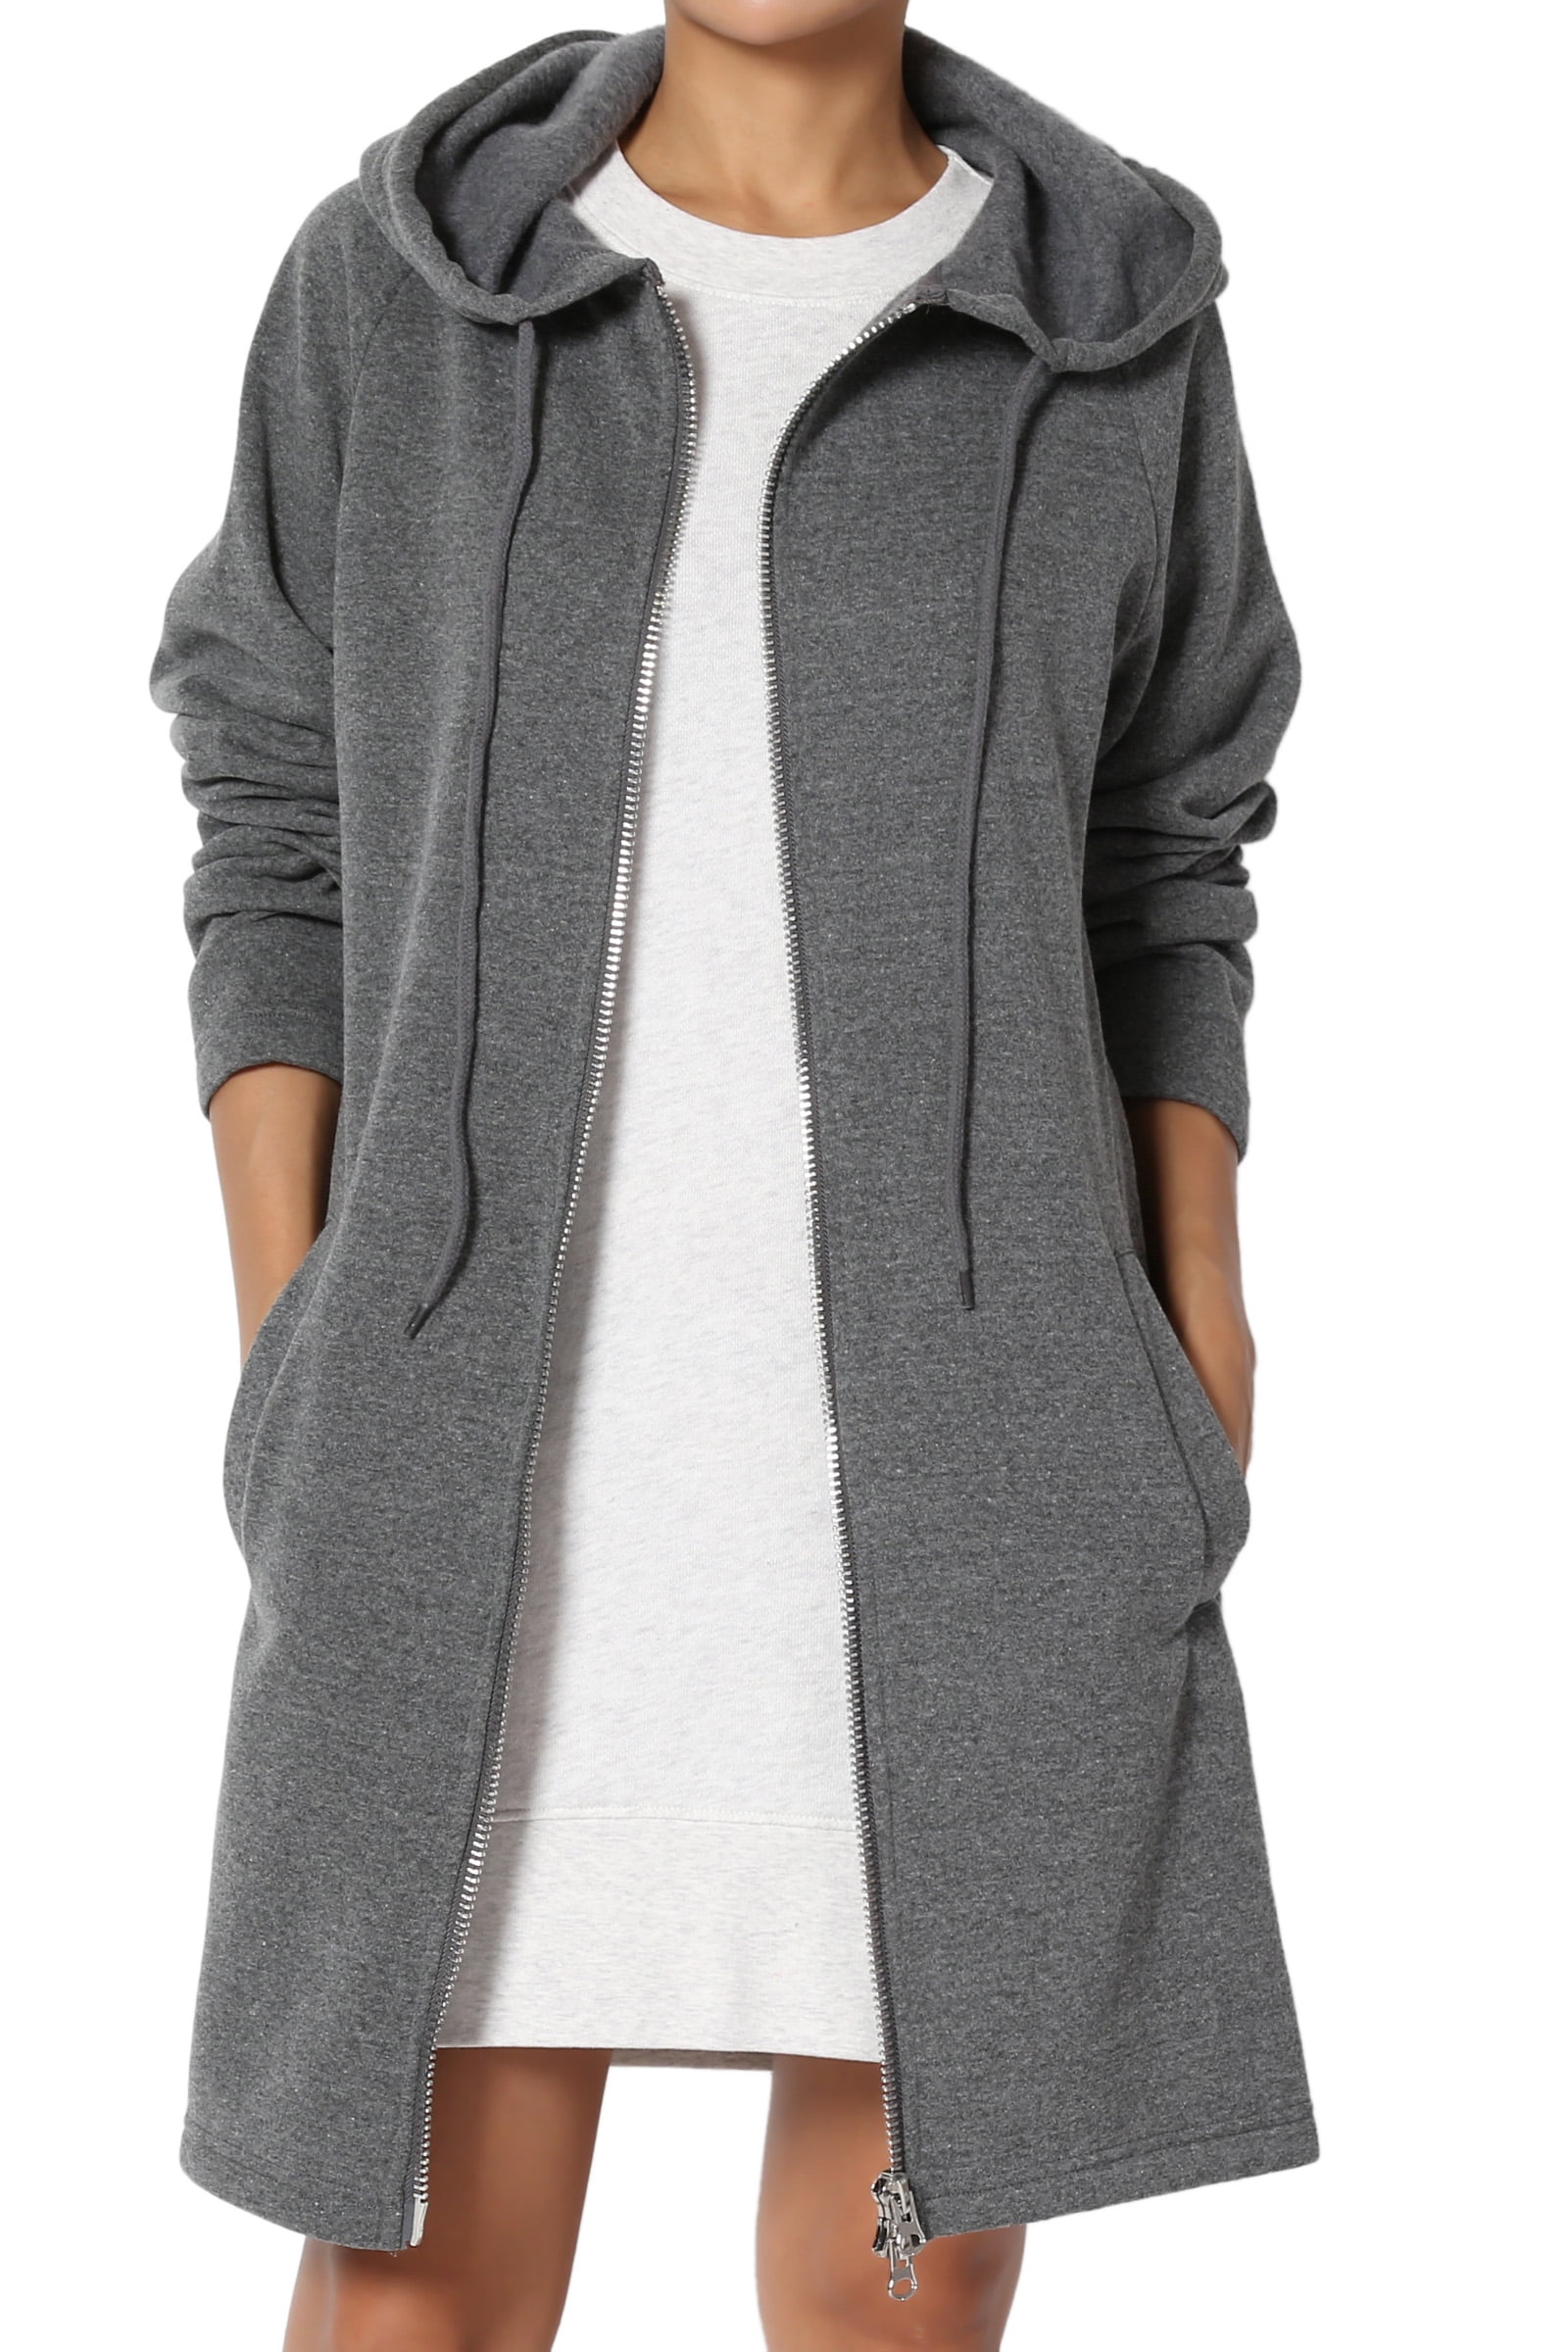 TheMogan Women's S~3X Oversized Hoodie Full Zip Up Long Sleeve Fleece ...